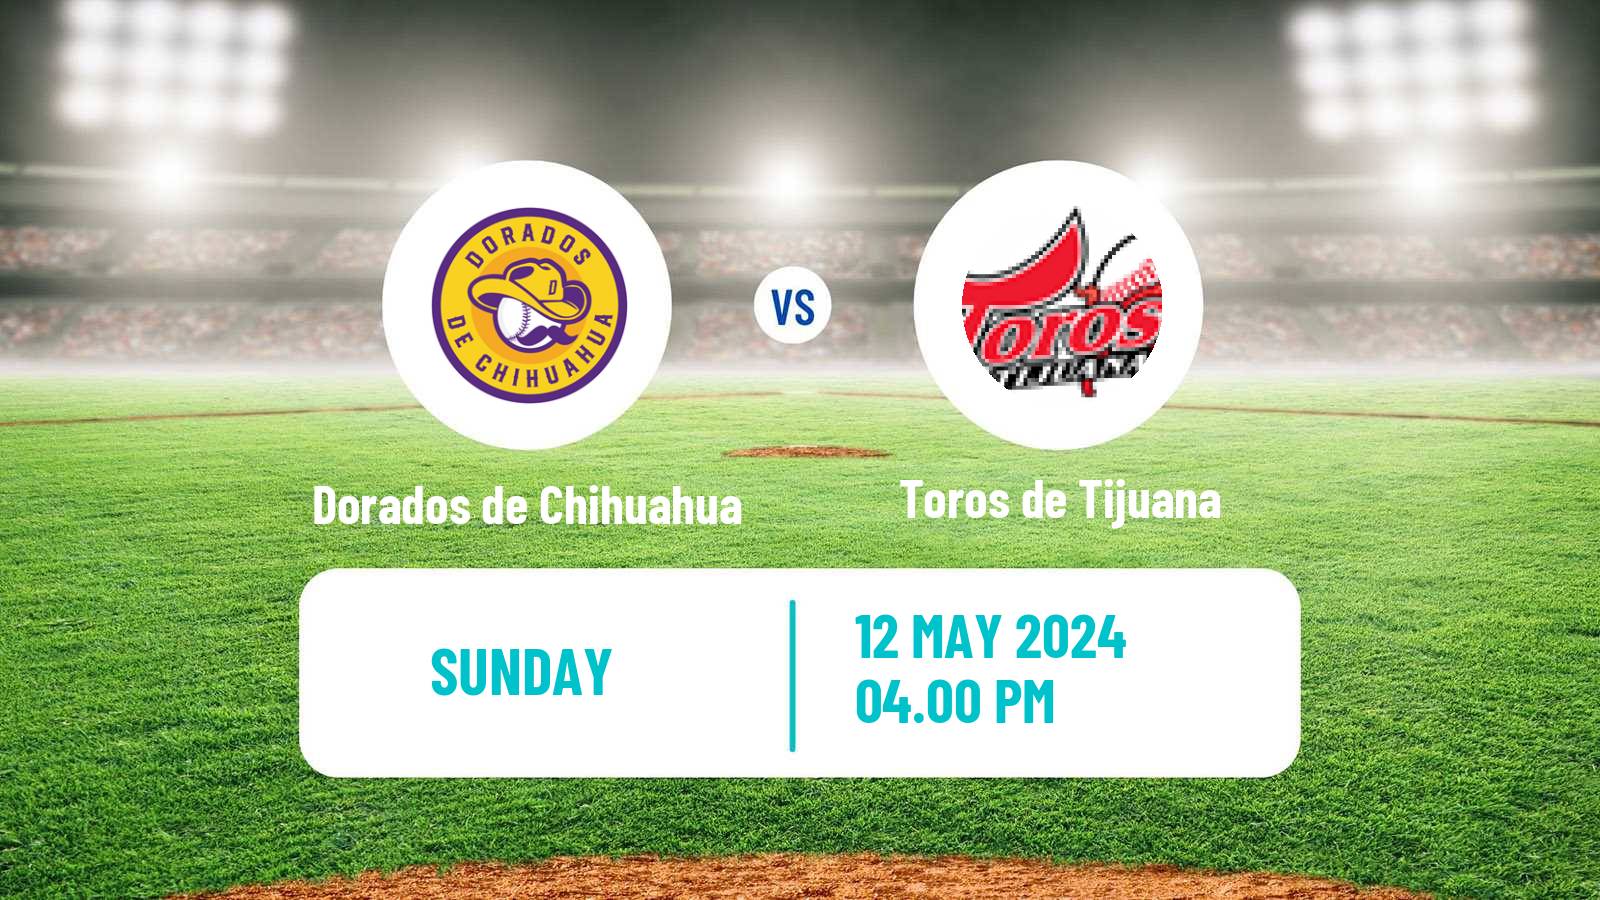 Baseball LMB Dorados de Chihuahua - Toros de Tijuana